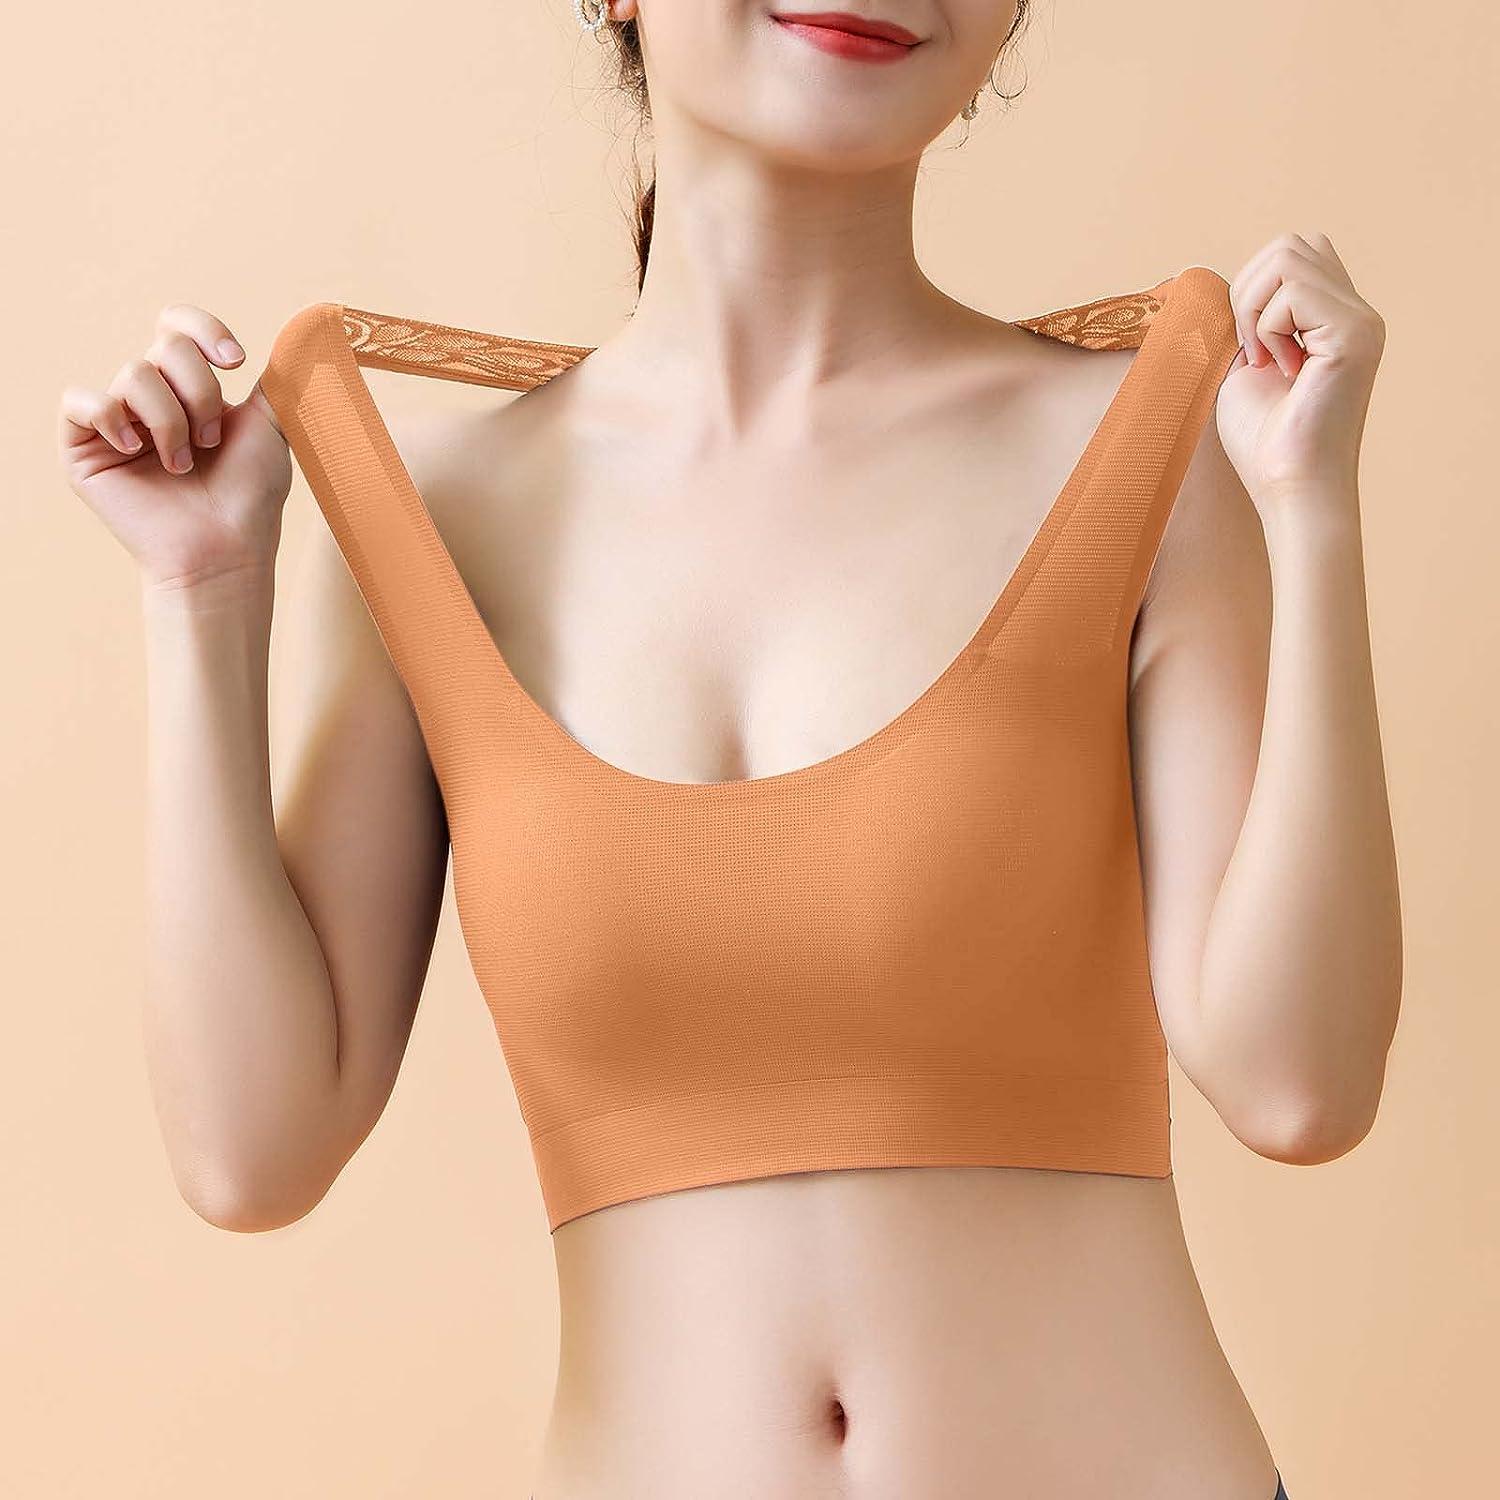  Womens Beauty Back Underwear Seamless Wireless Bra